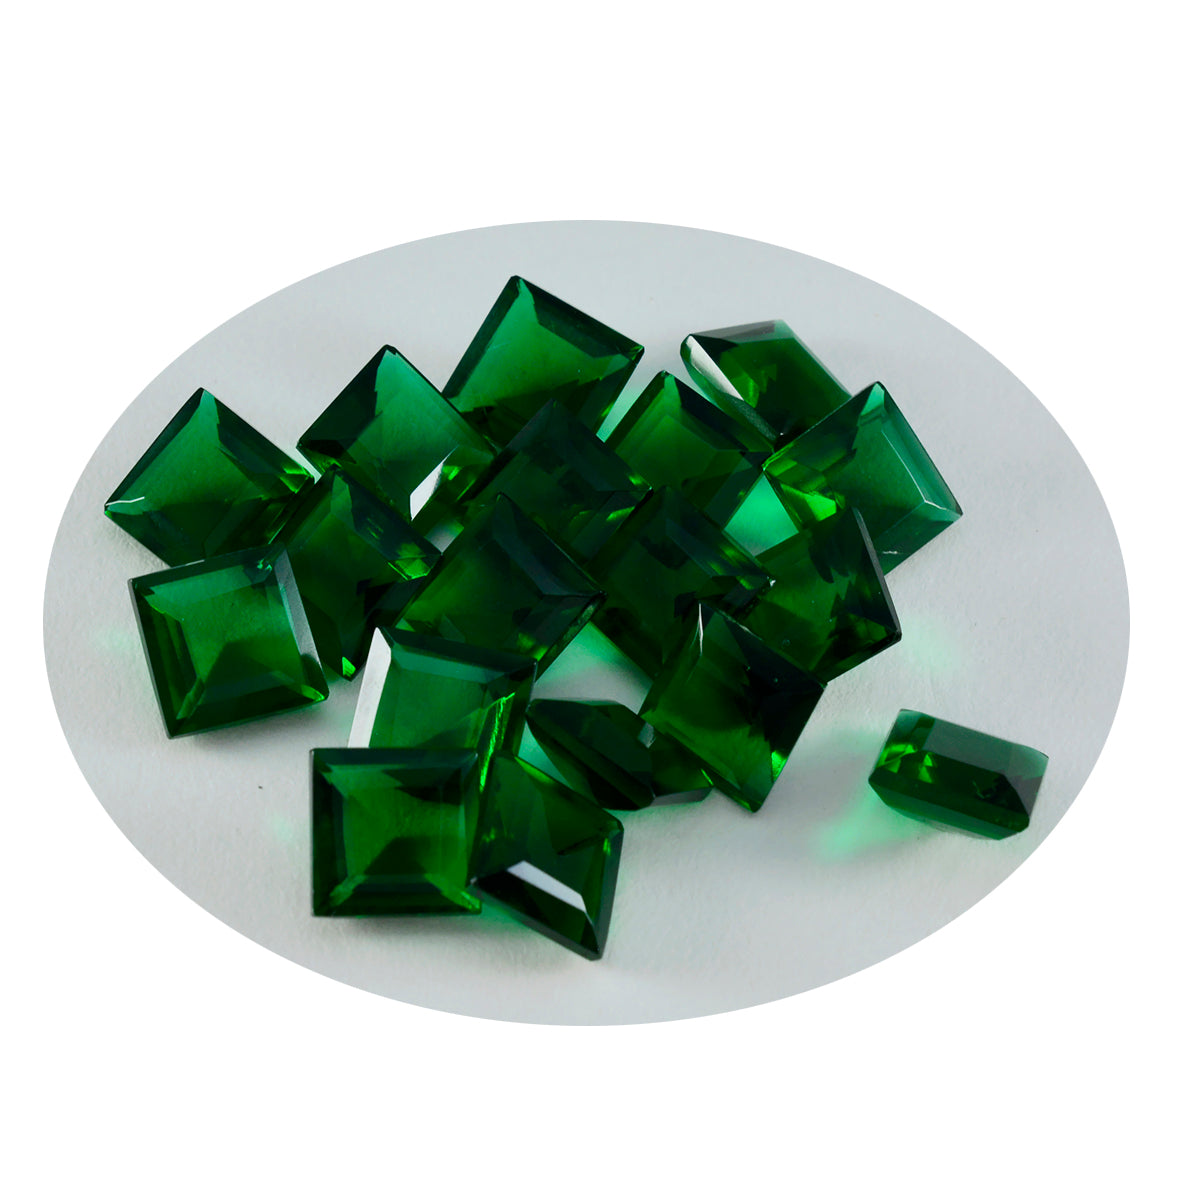 riyogems 1 шт., зеленый изумруд, граненый cz, 8x8 мм, квадратная форма, красивые качественные драгоценные камни